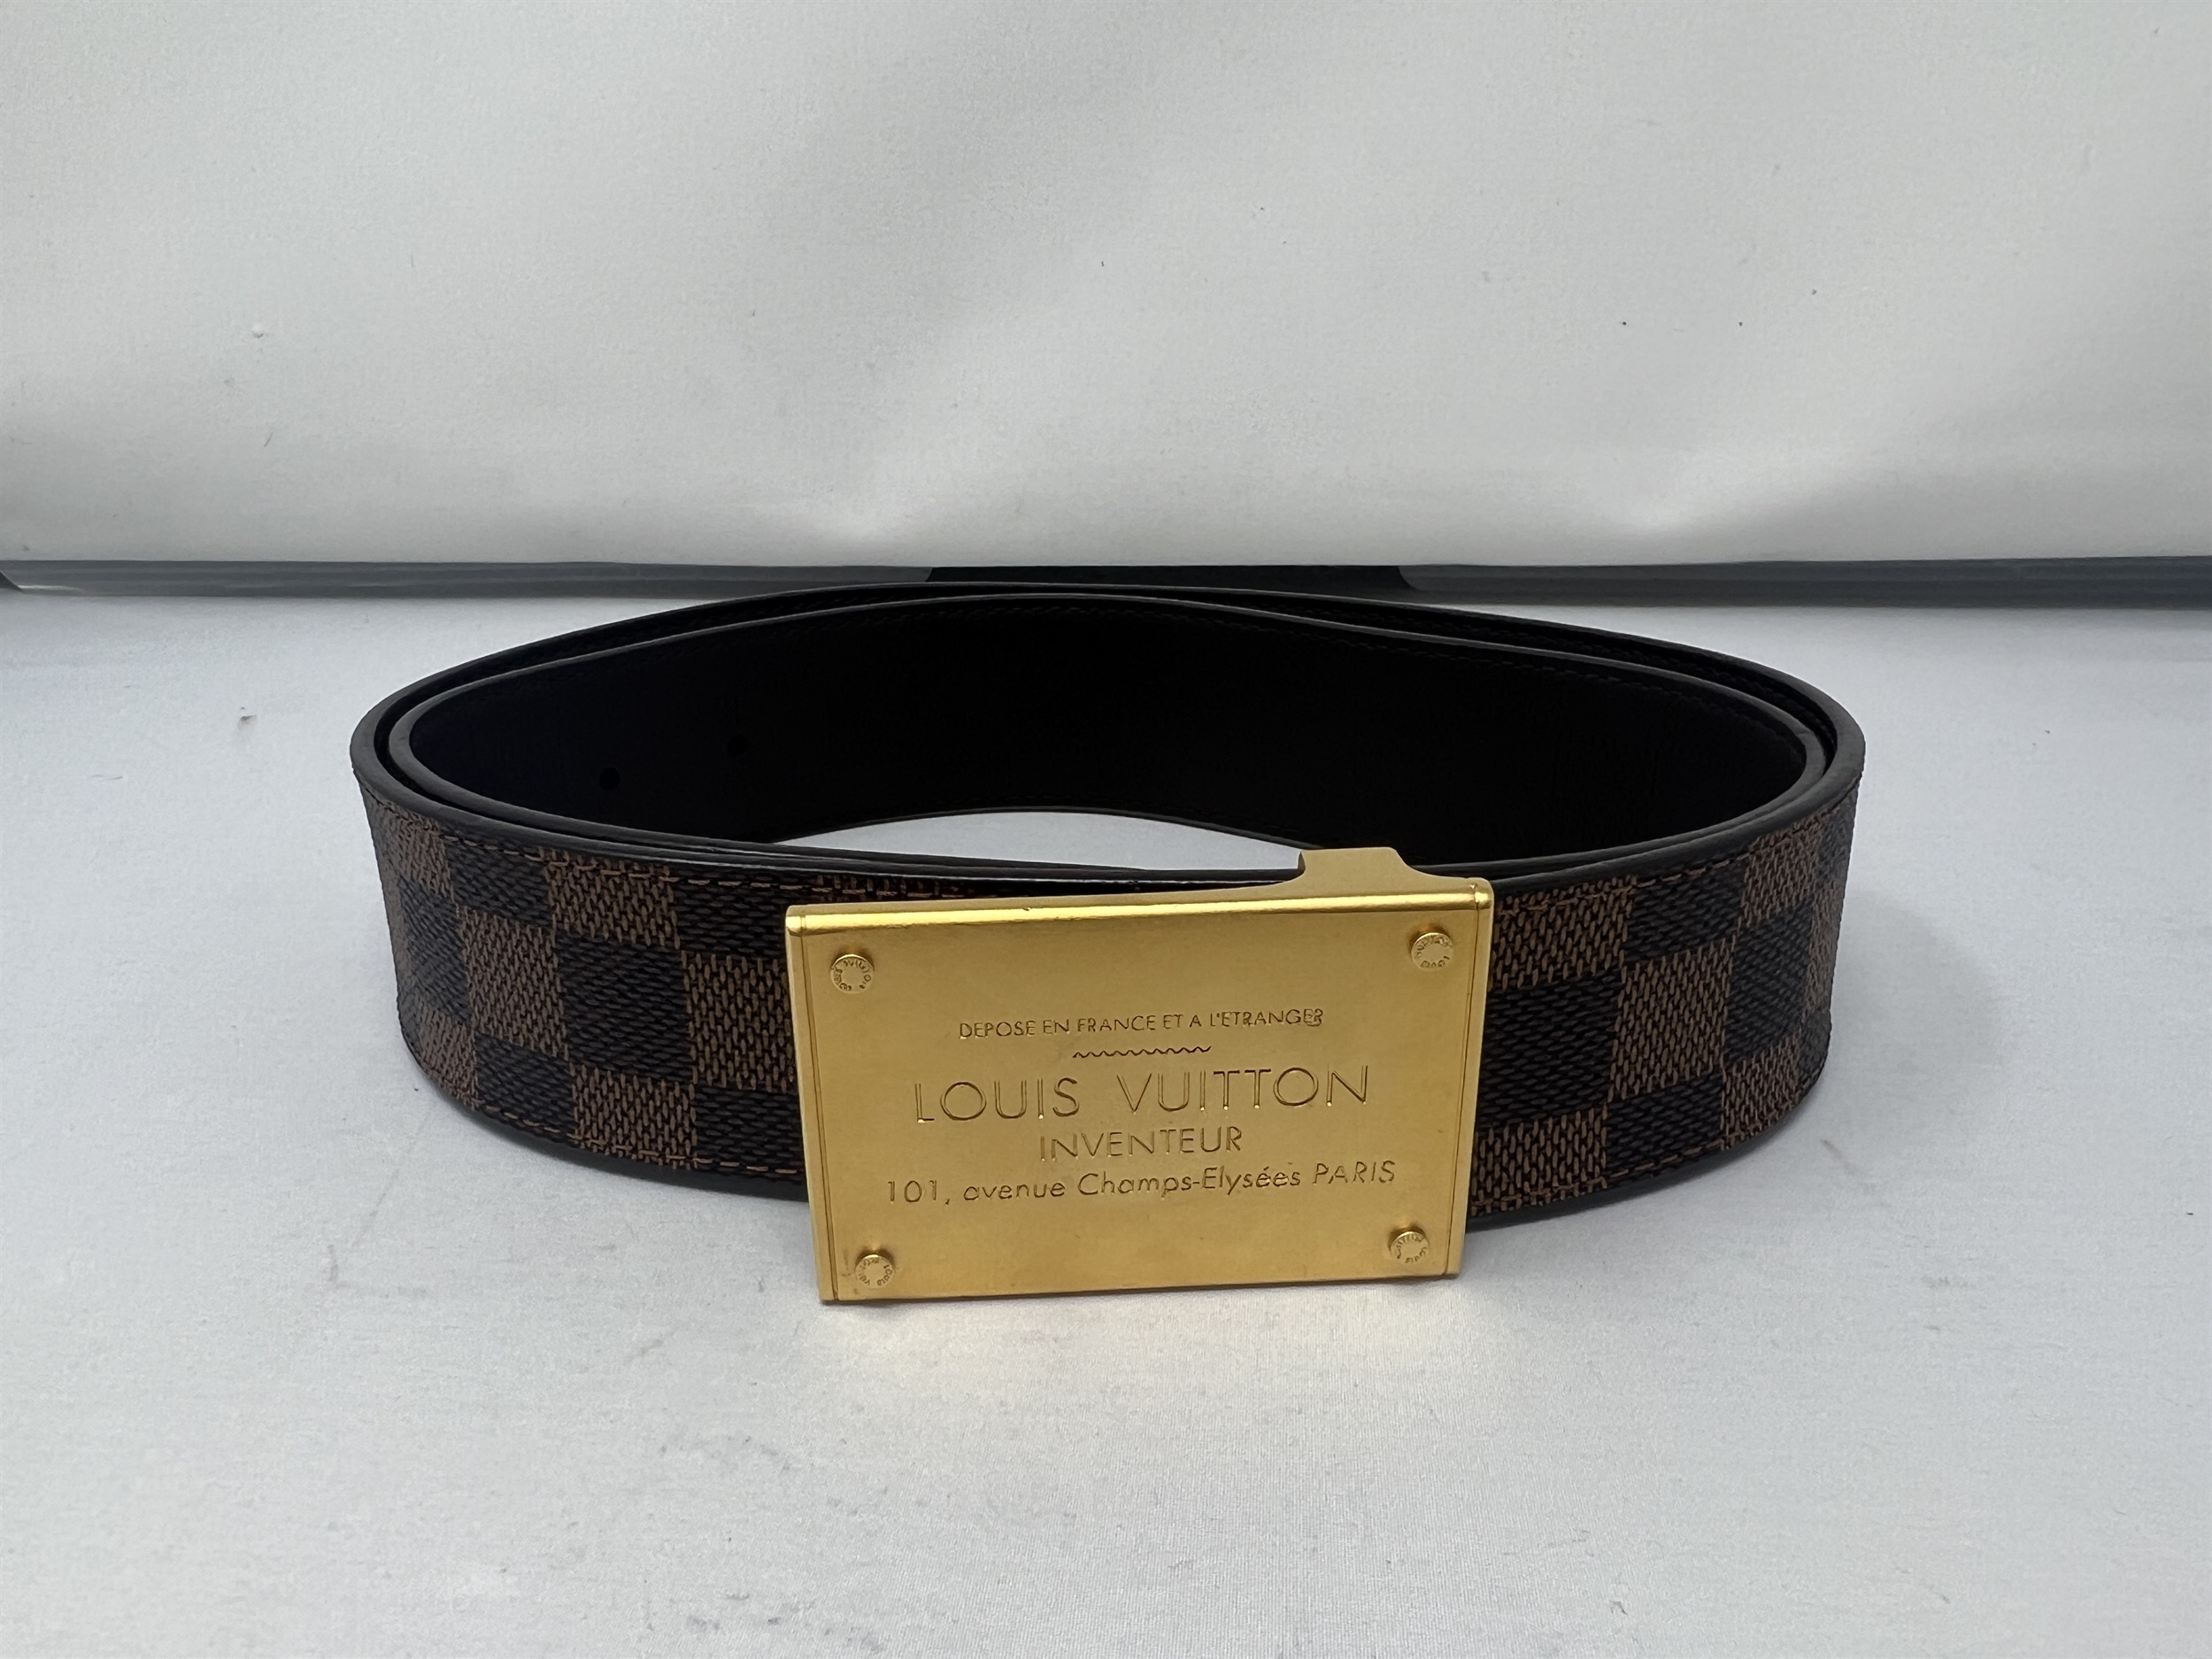 Louis Vuitton neo inventeur reversible belt